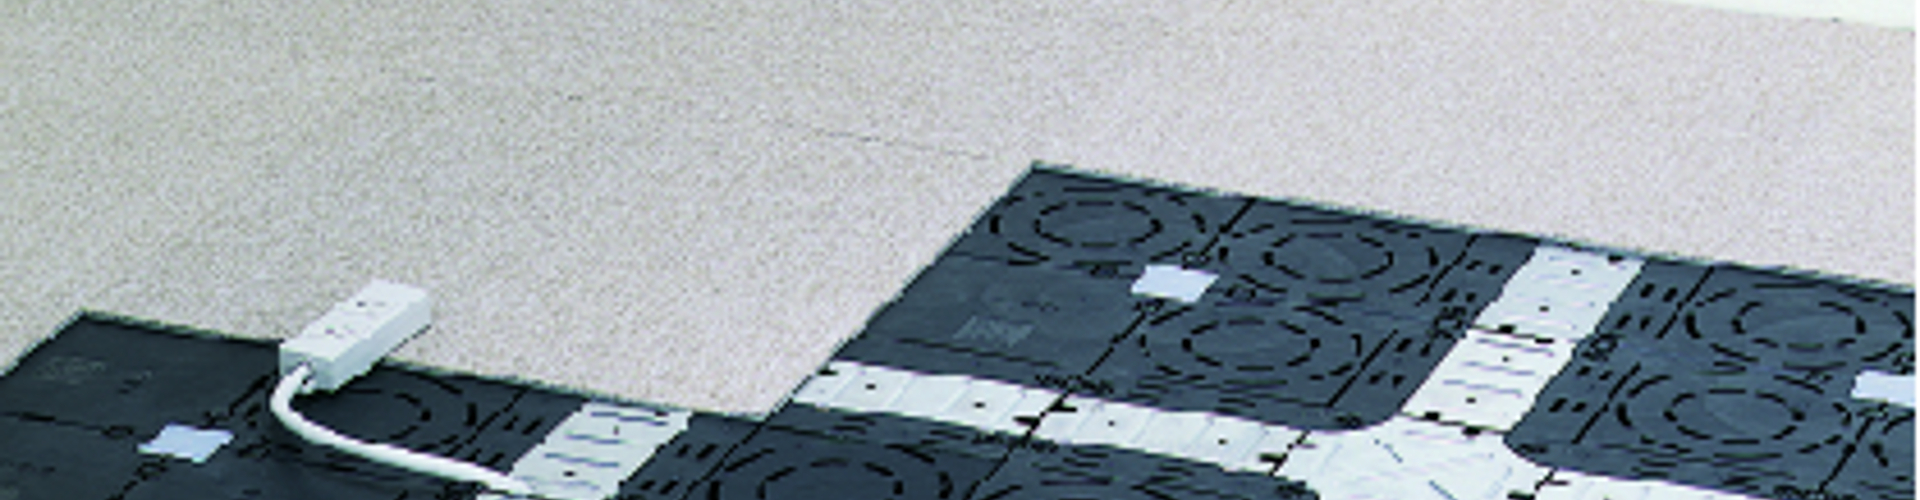 製品一覧 [内装床材] | OAフロア用タイルカーペット | truss (トラス) - メーカー横断の建材検索サイト